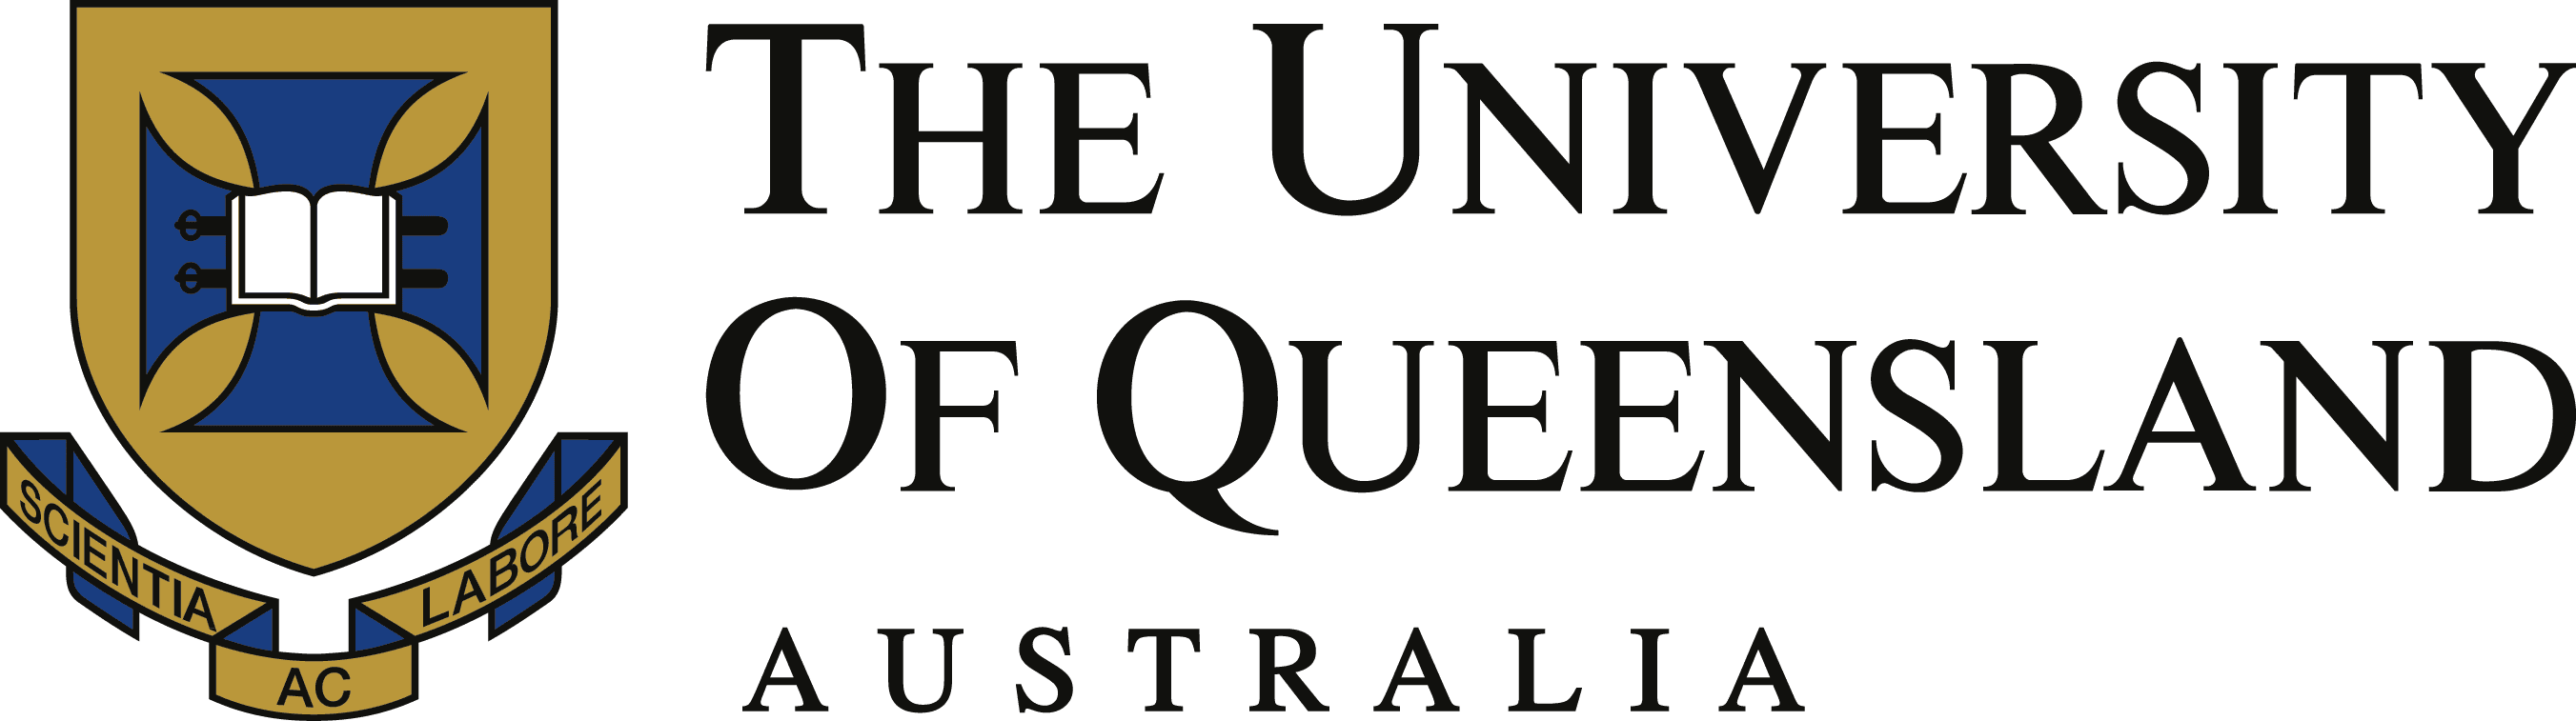 Impara l’inglese presso l’Università del Queensland